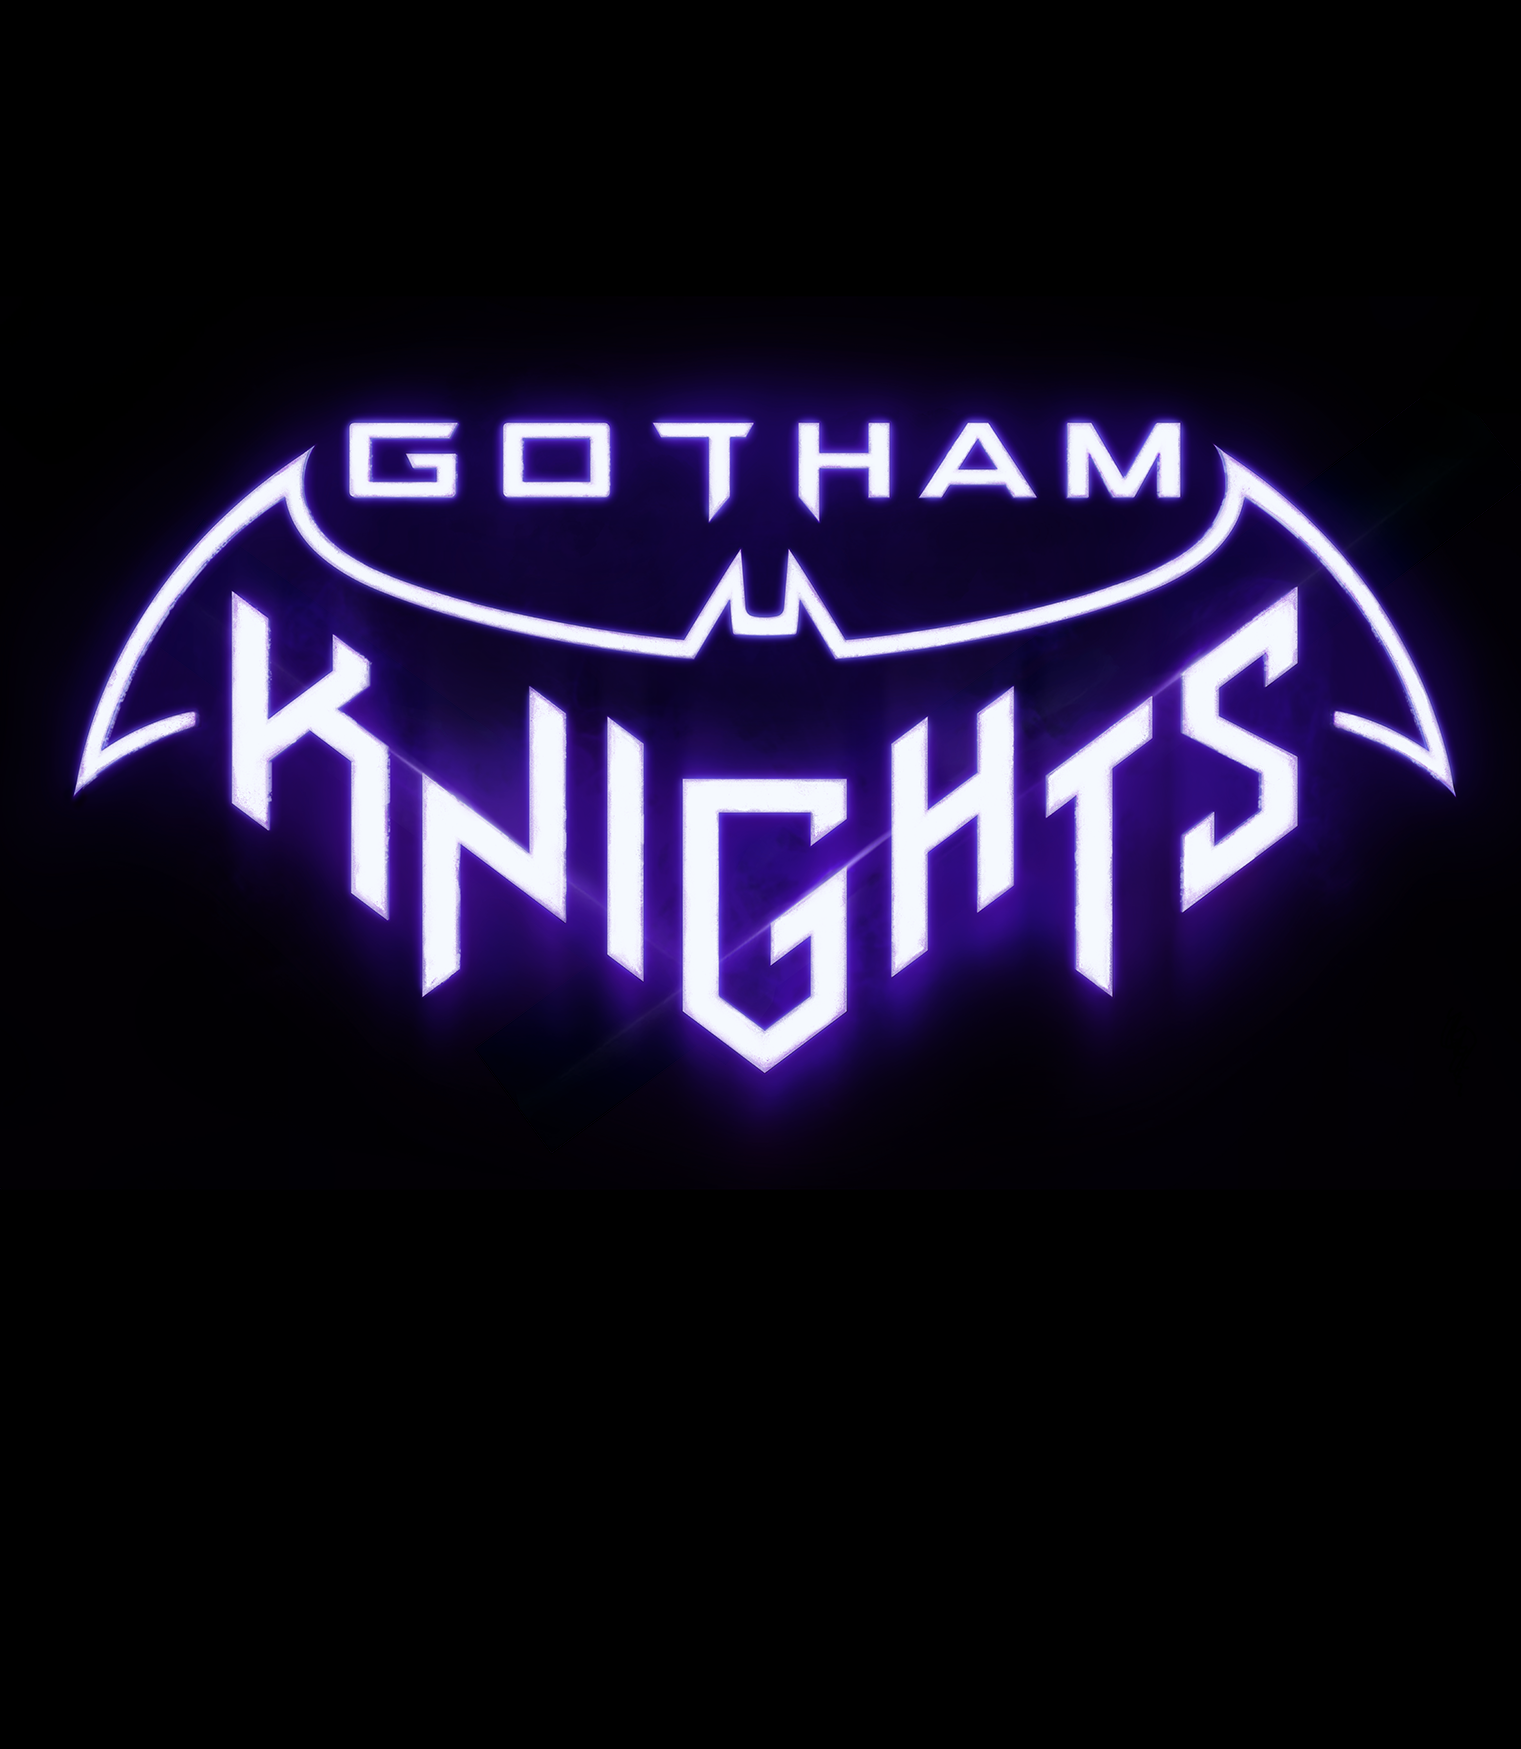 Gotham knights steam фото 113